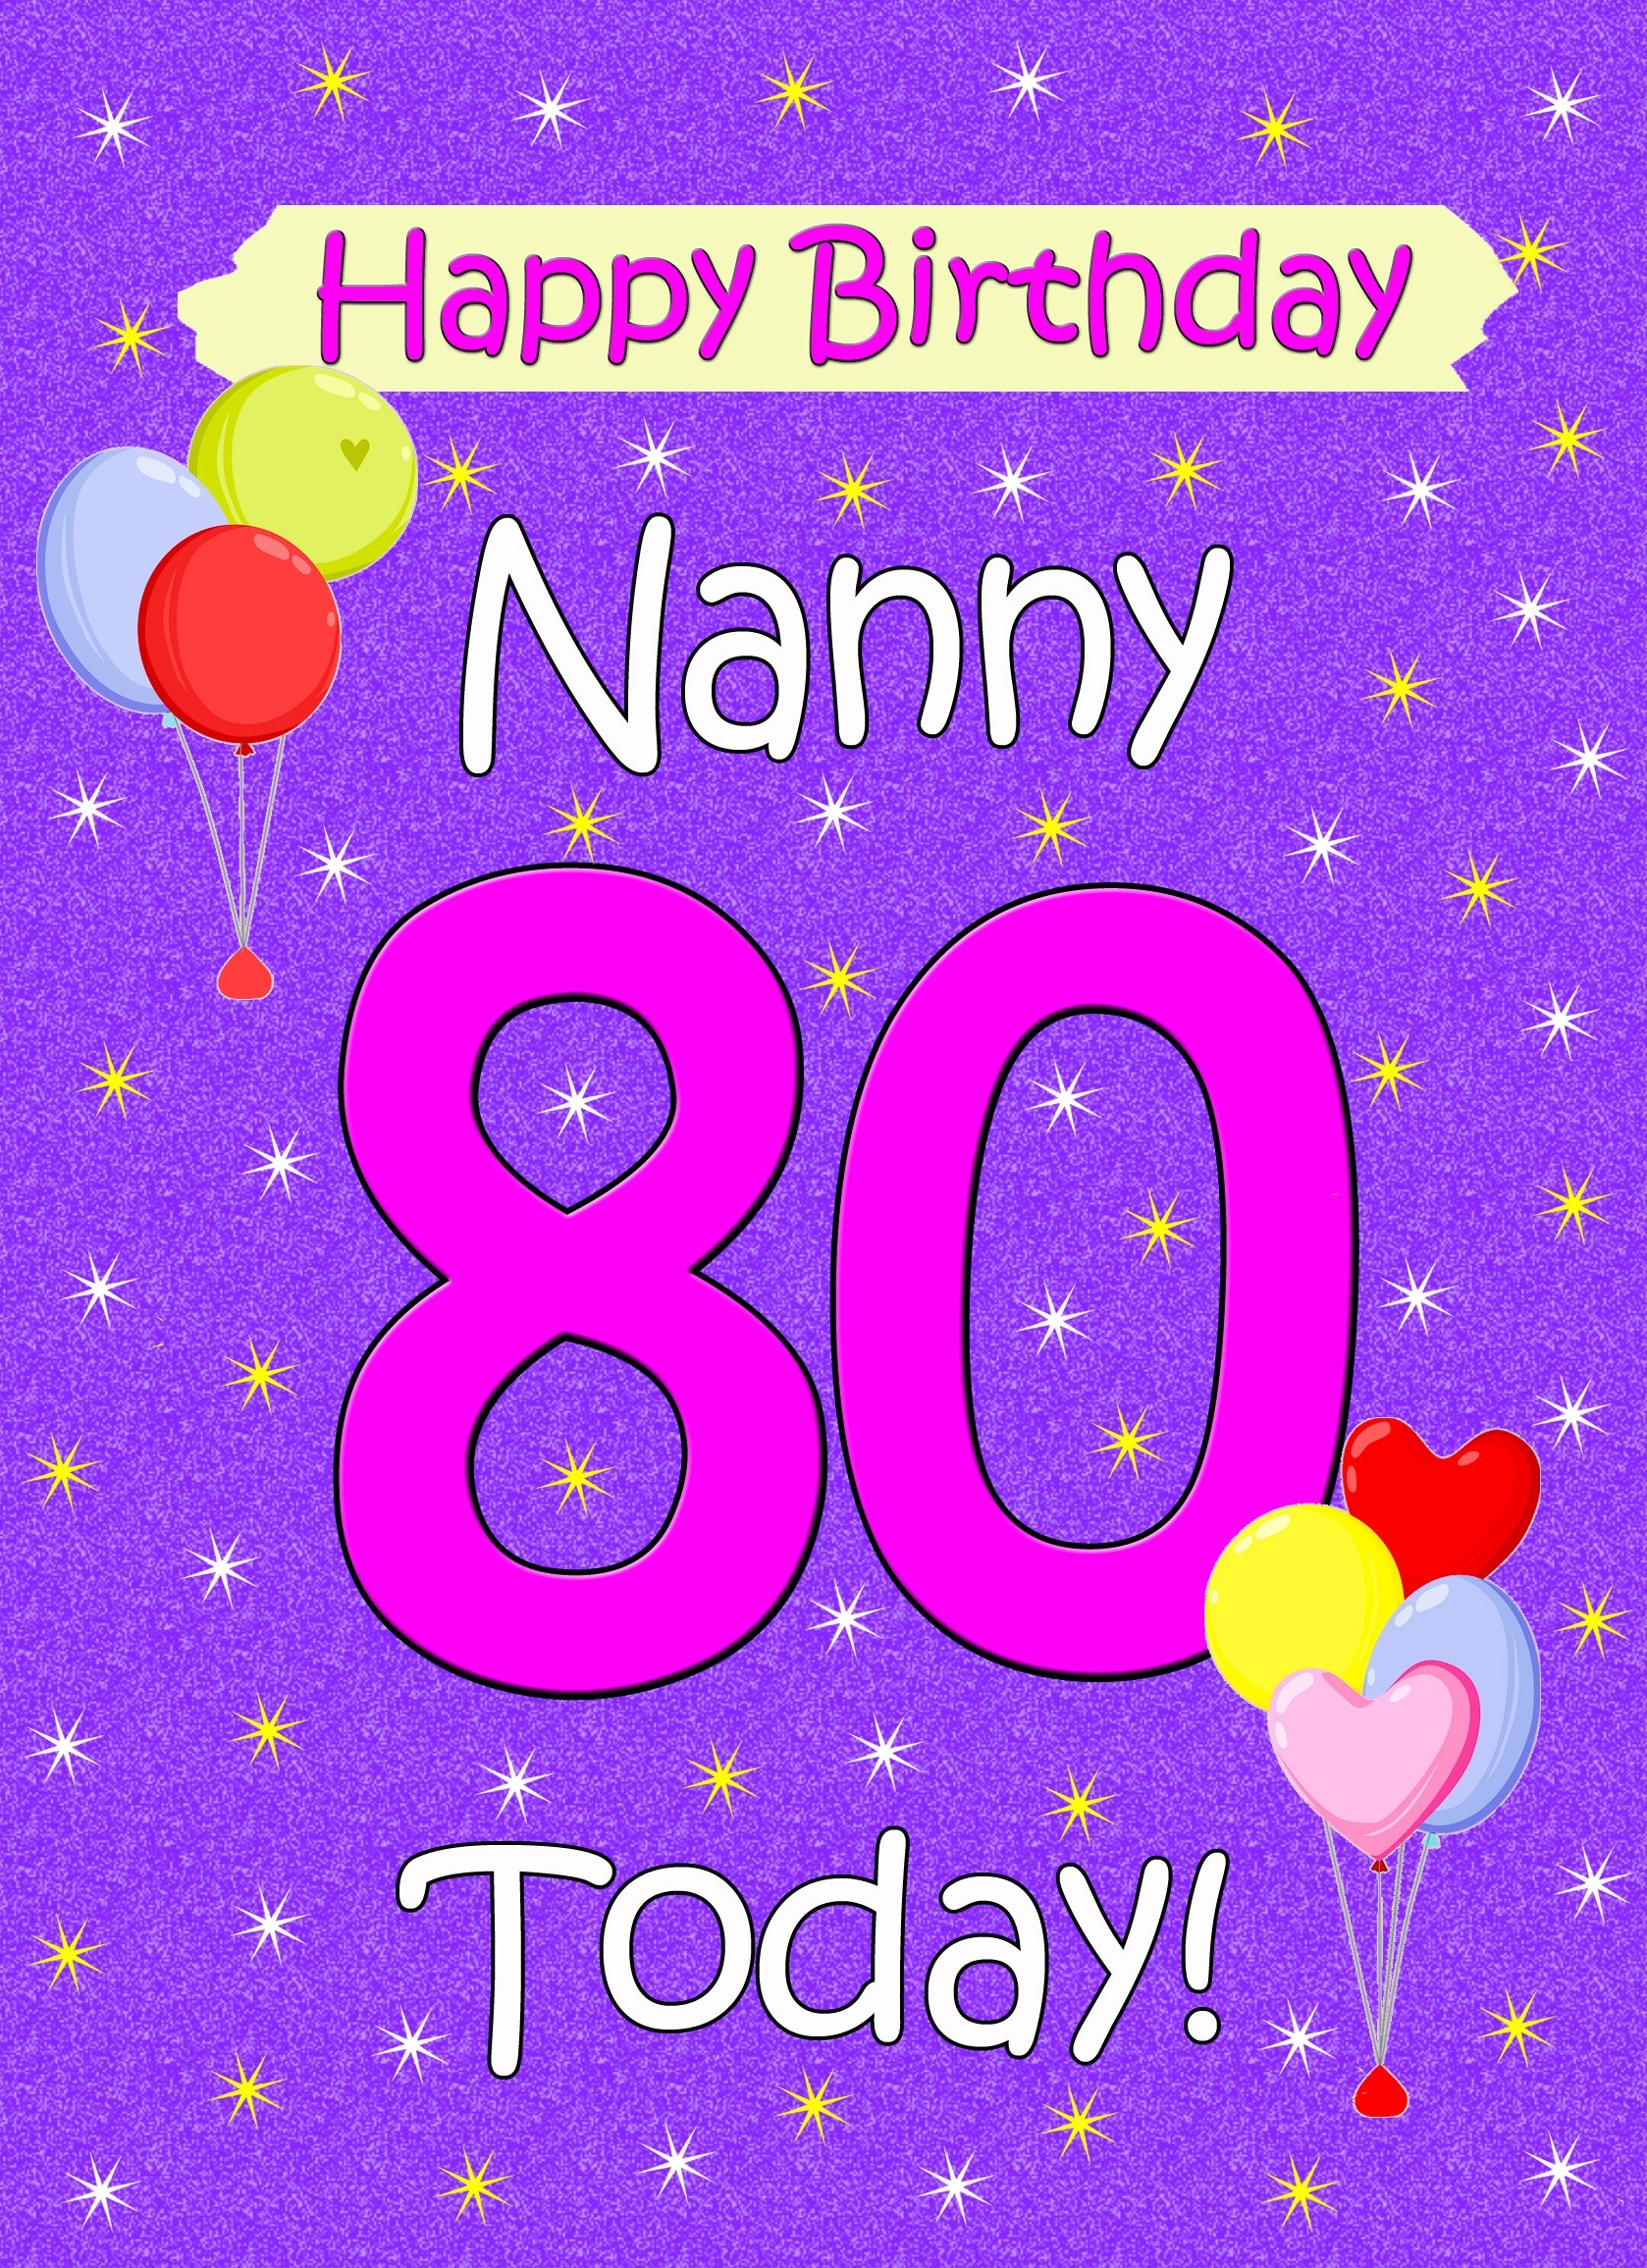 Nanny 80th Birthday Card (Lilac)